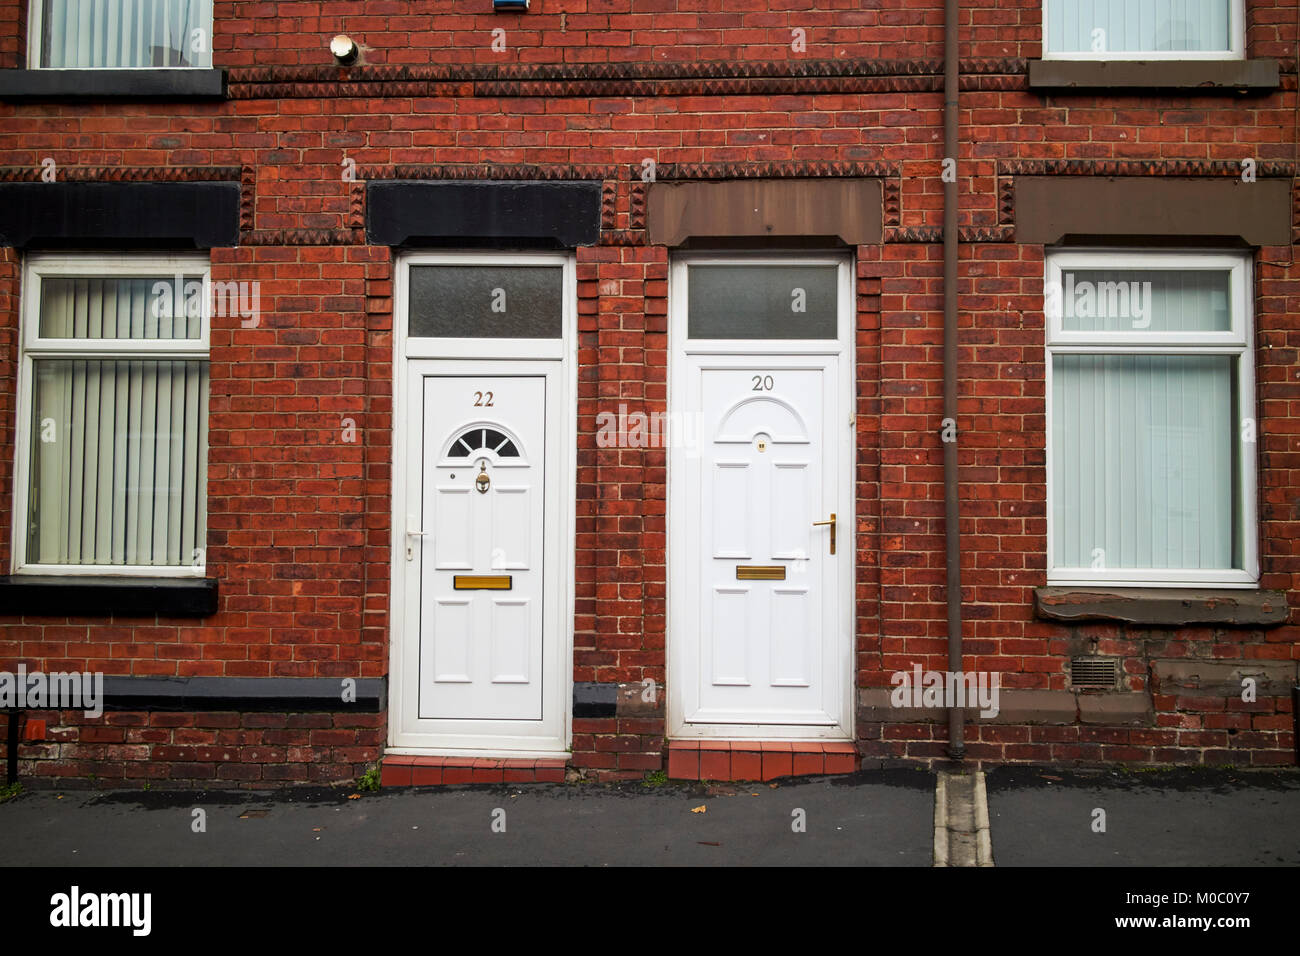 Las puertas de PVC blanco y moderno de ladrillo rojo, de dos dormitorios en casas adosadas victorianas ward street St Helens merseyside uk Foto de stock